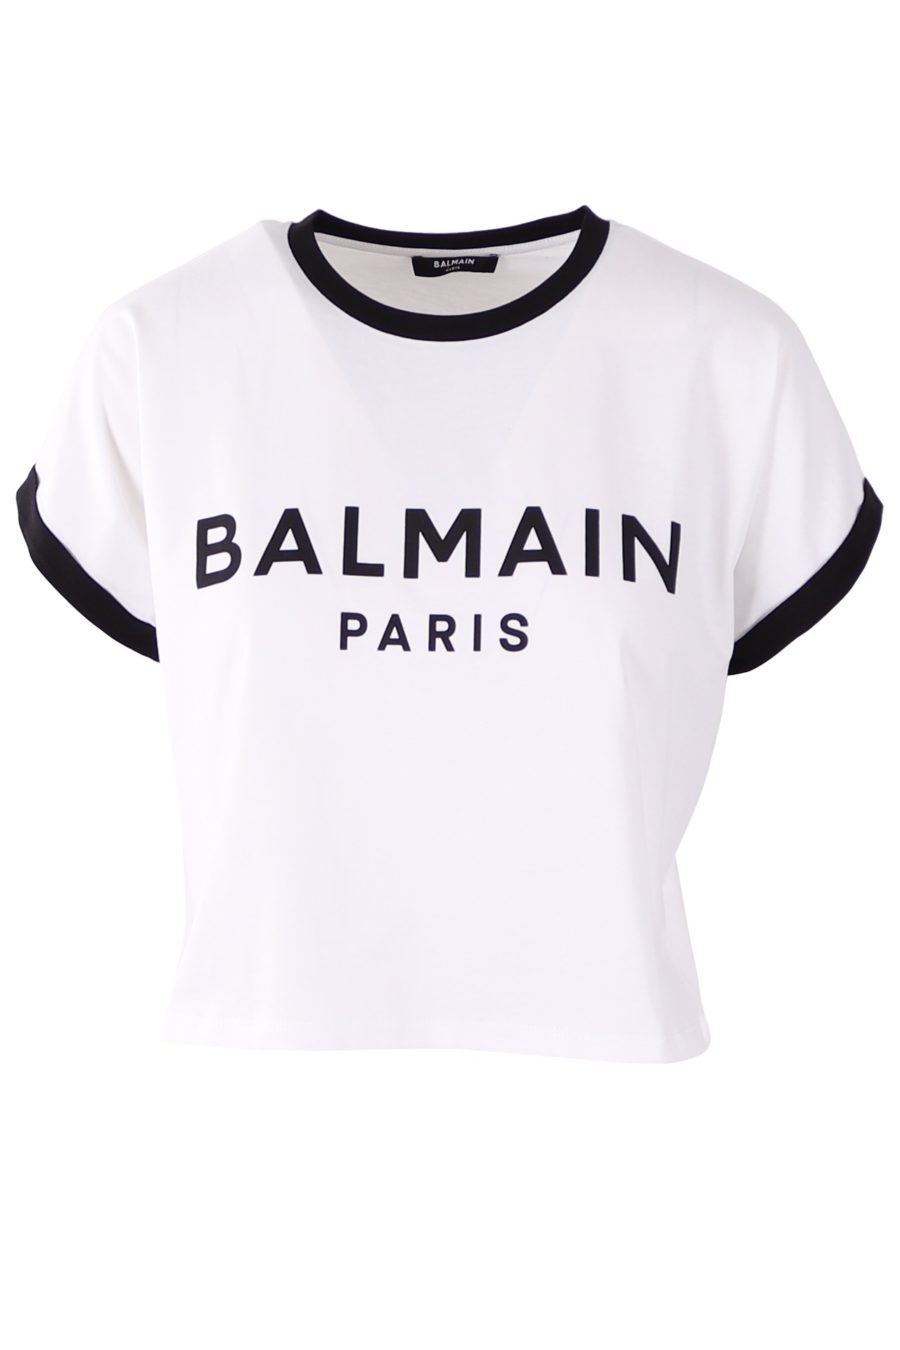 Camiseta corta Balmain blanca con logo flocado en negro - 2cb284172dce74a8e50699d332c31511a4f799ee